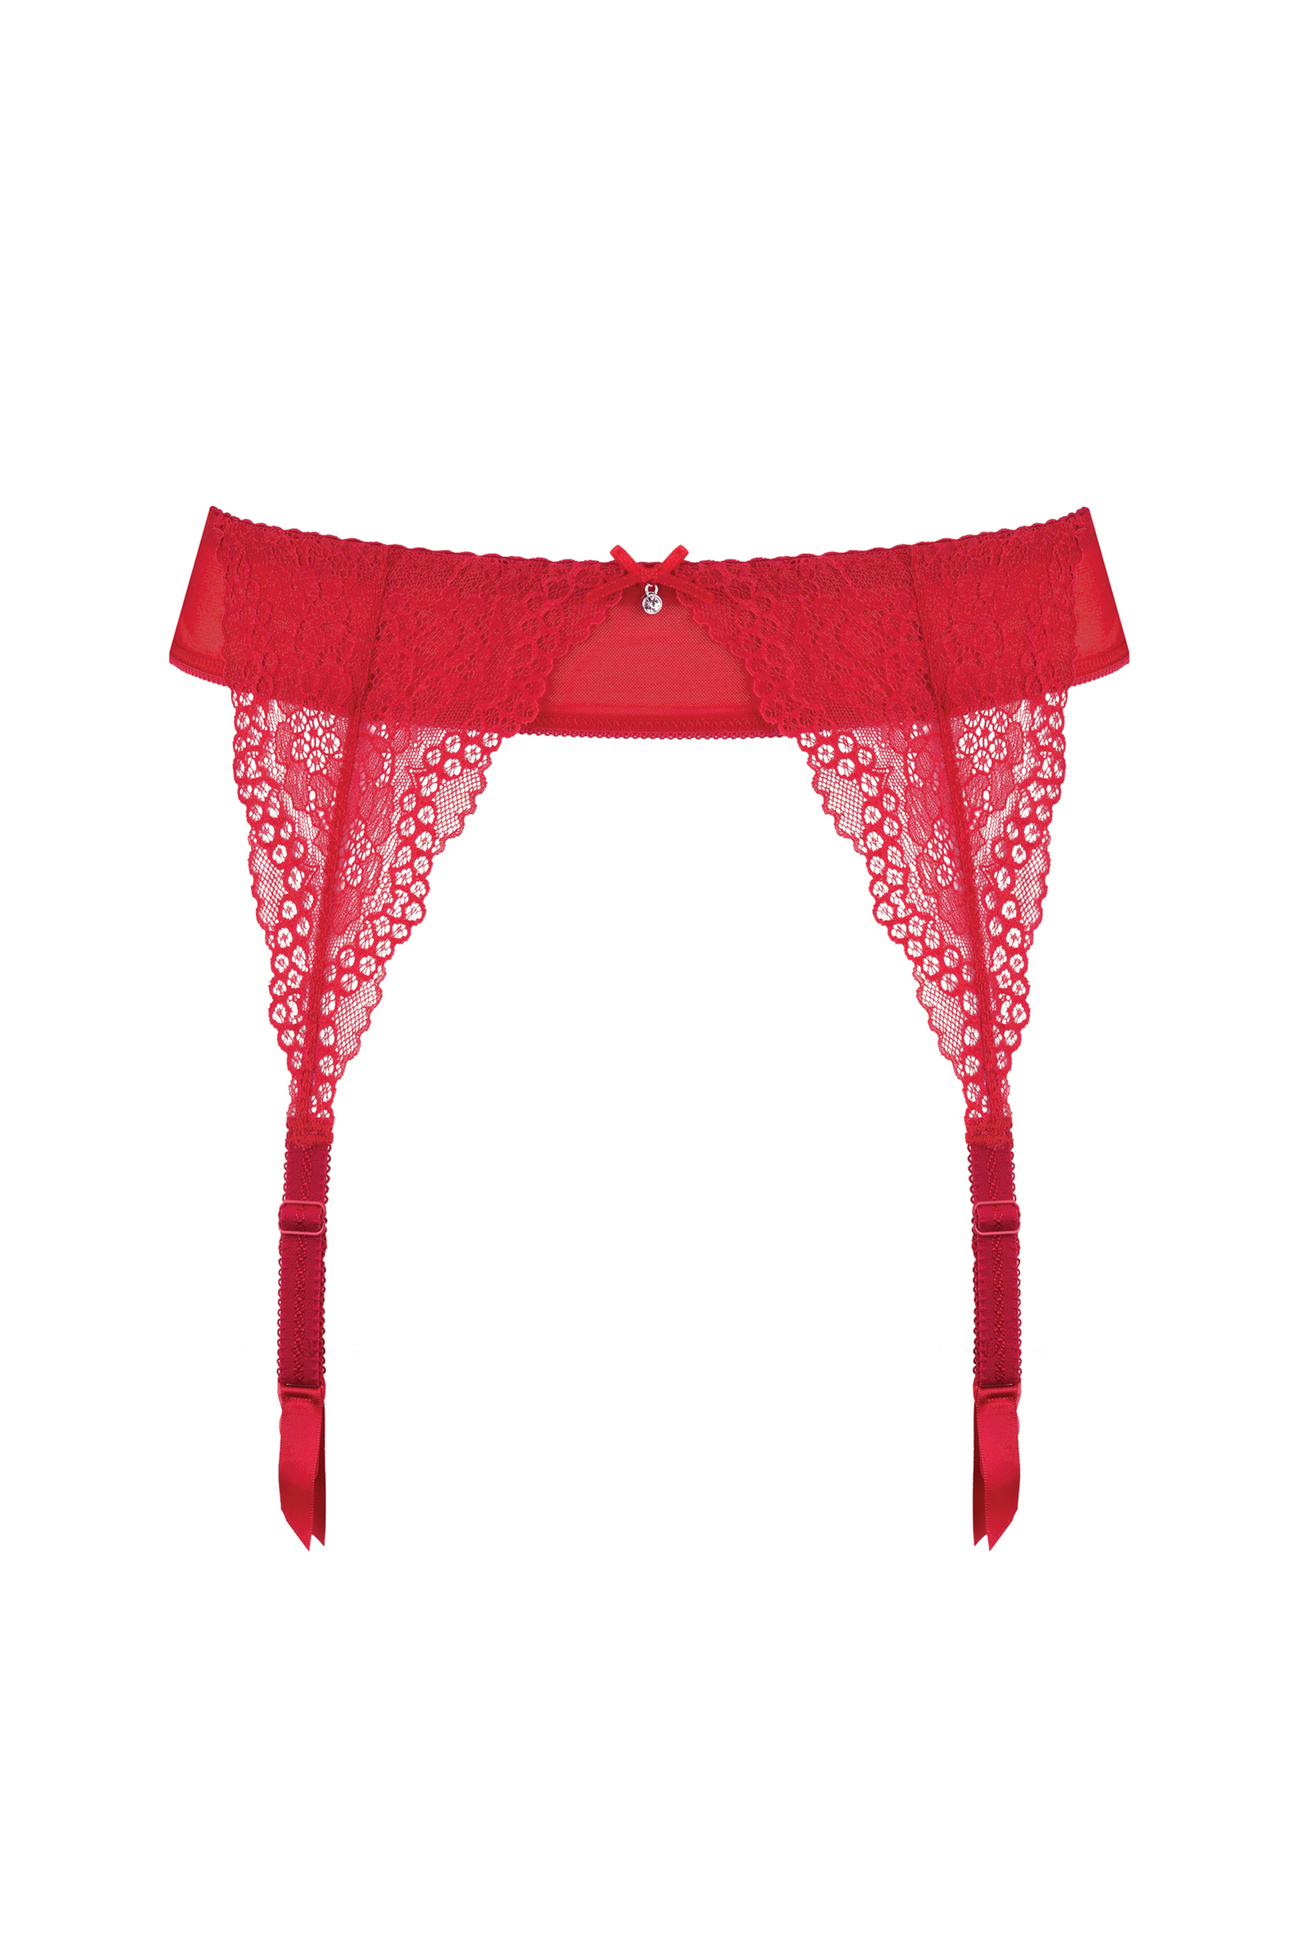 Scarlet lace garter belt red